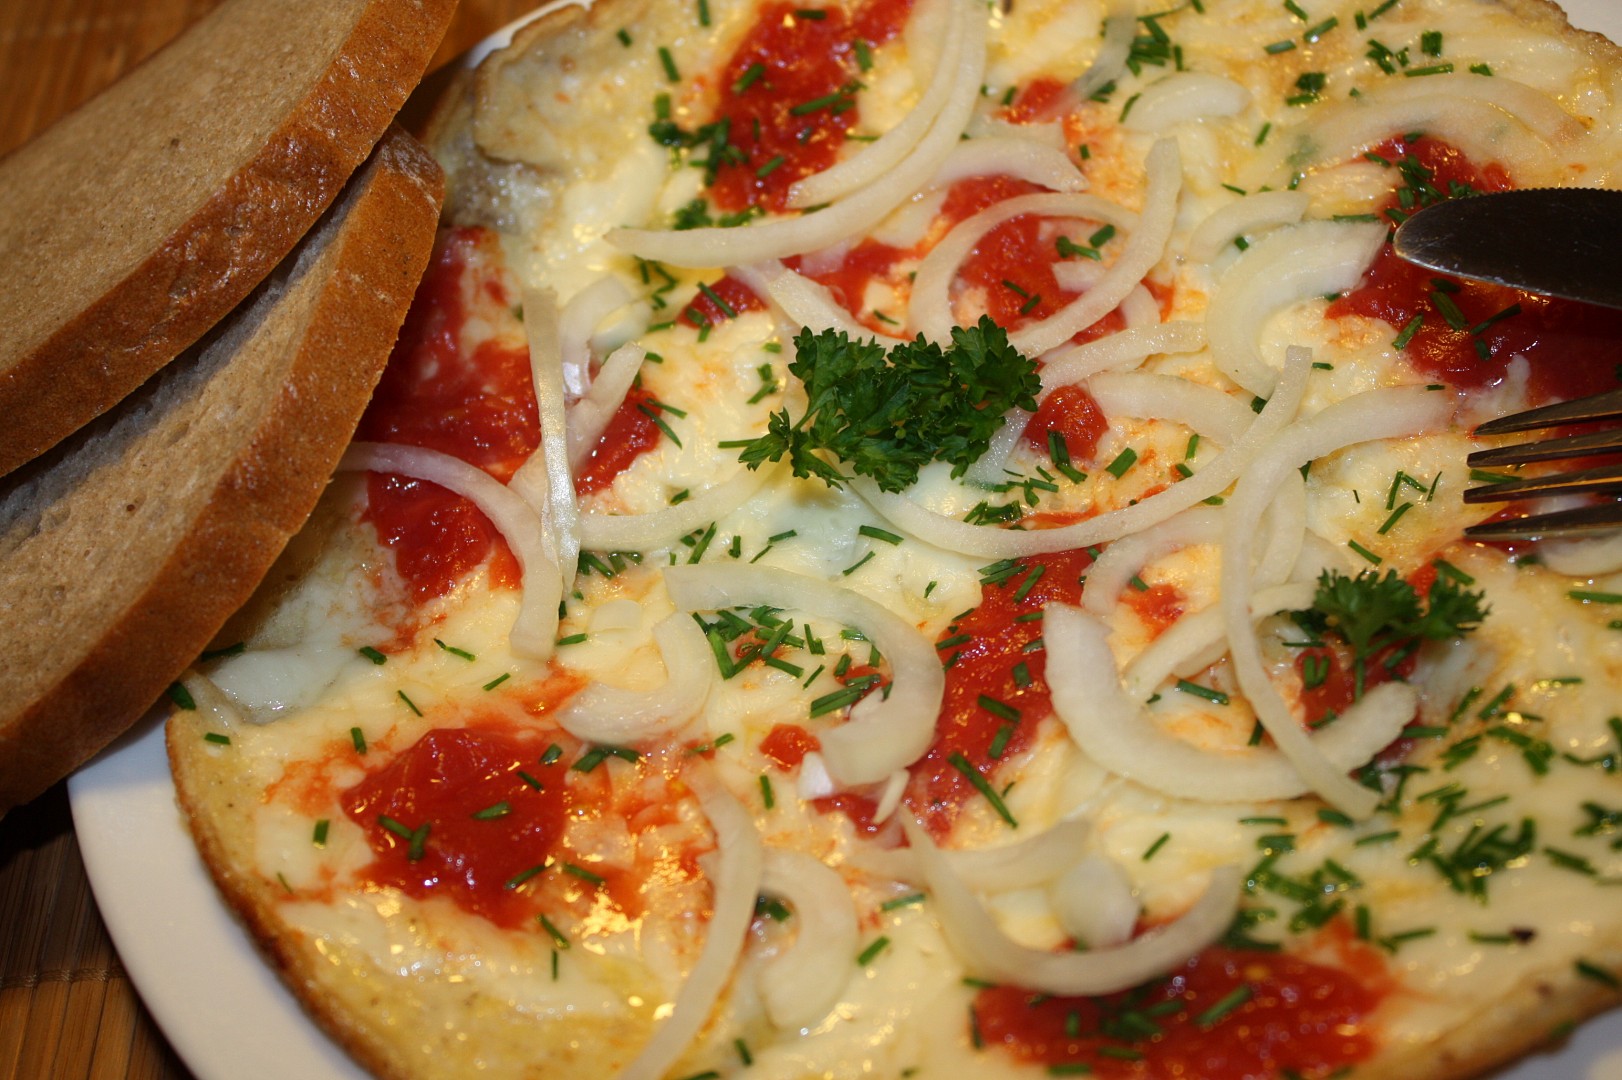 Vaječná omeleta se sýrem